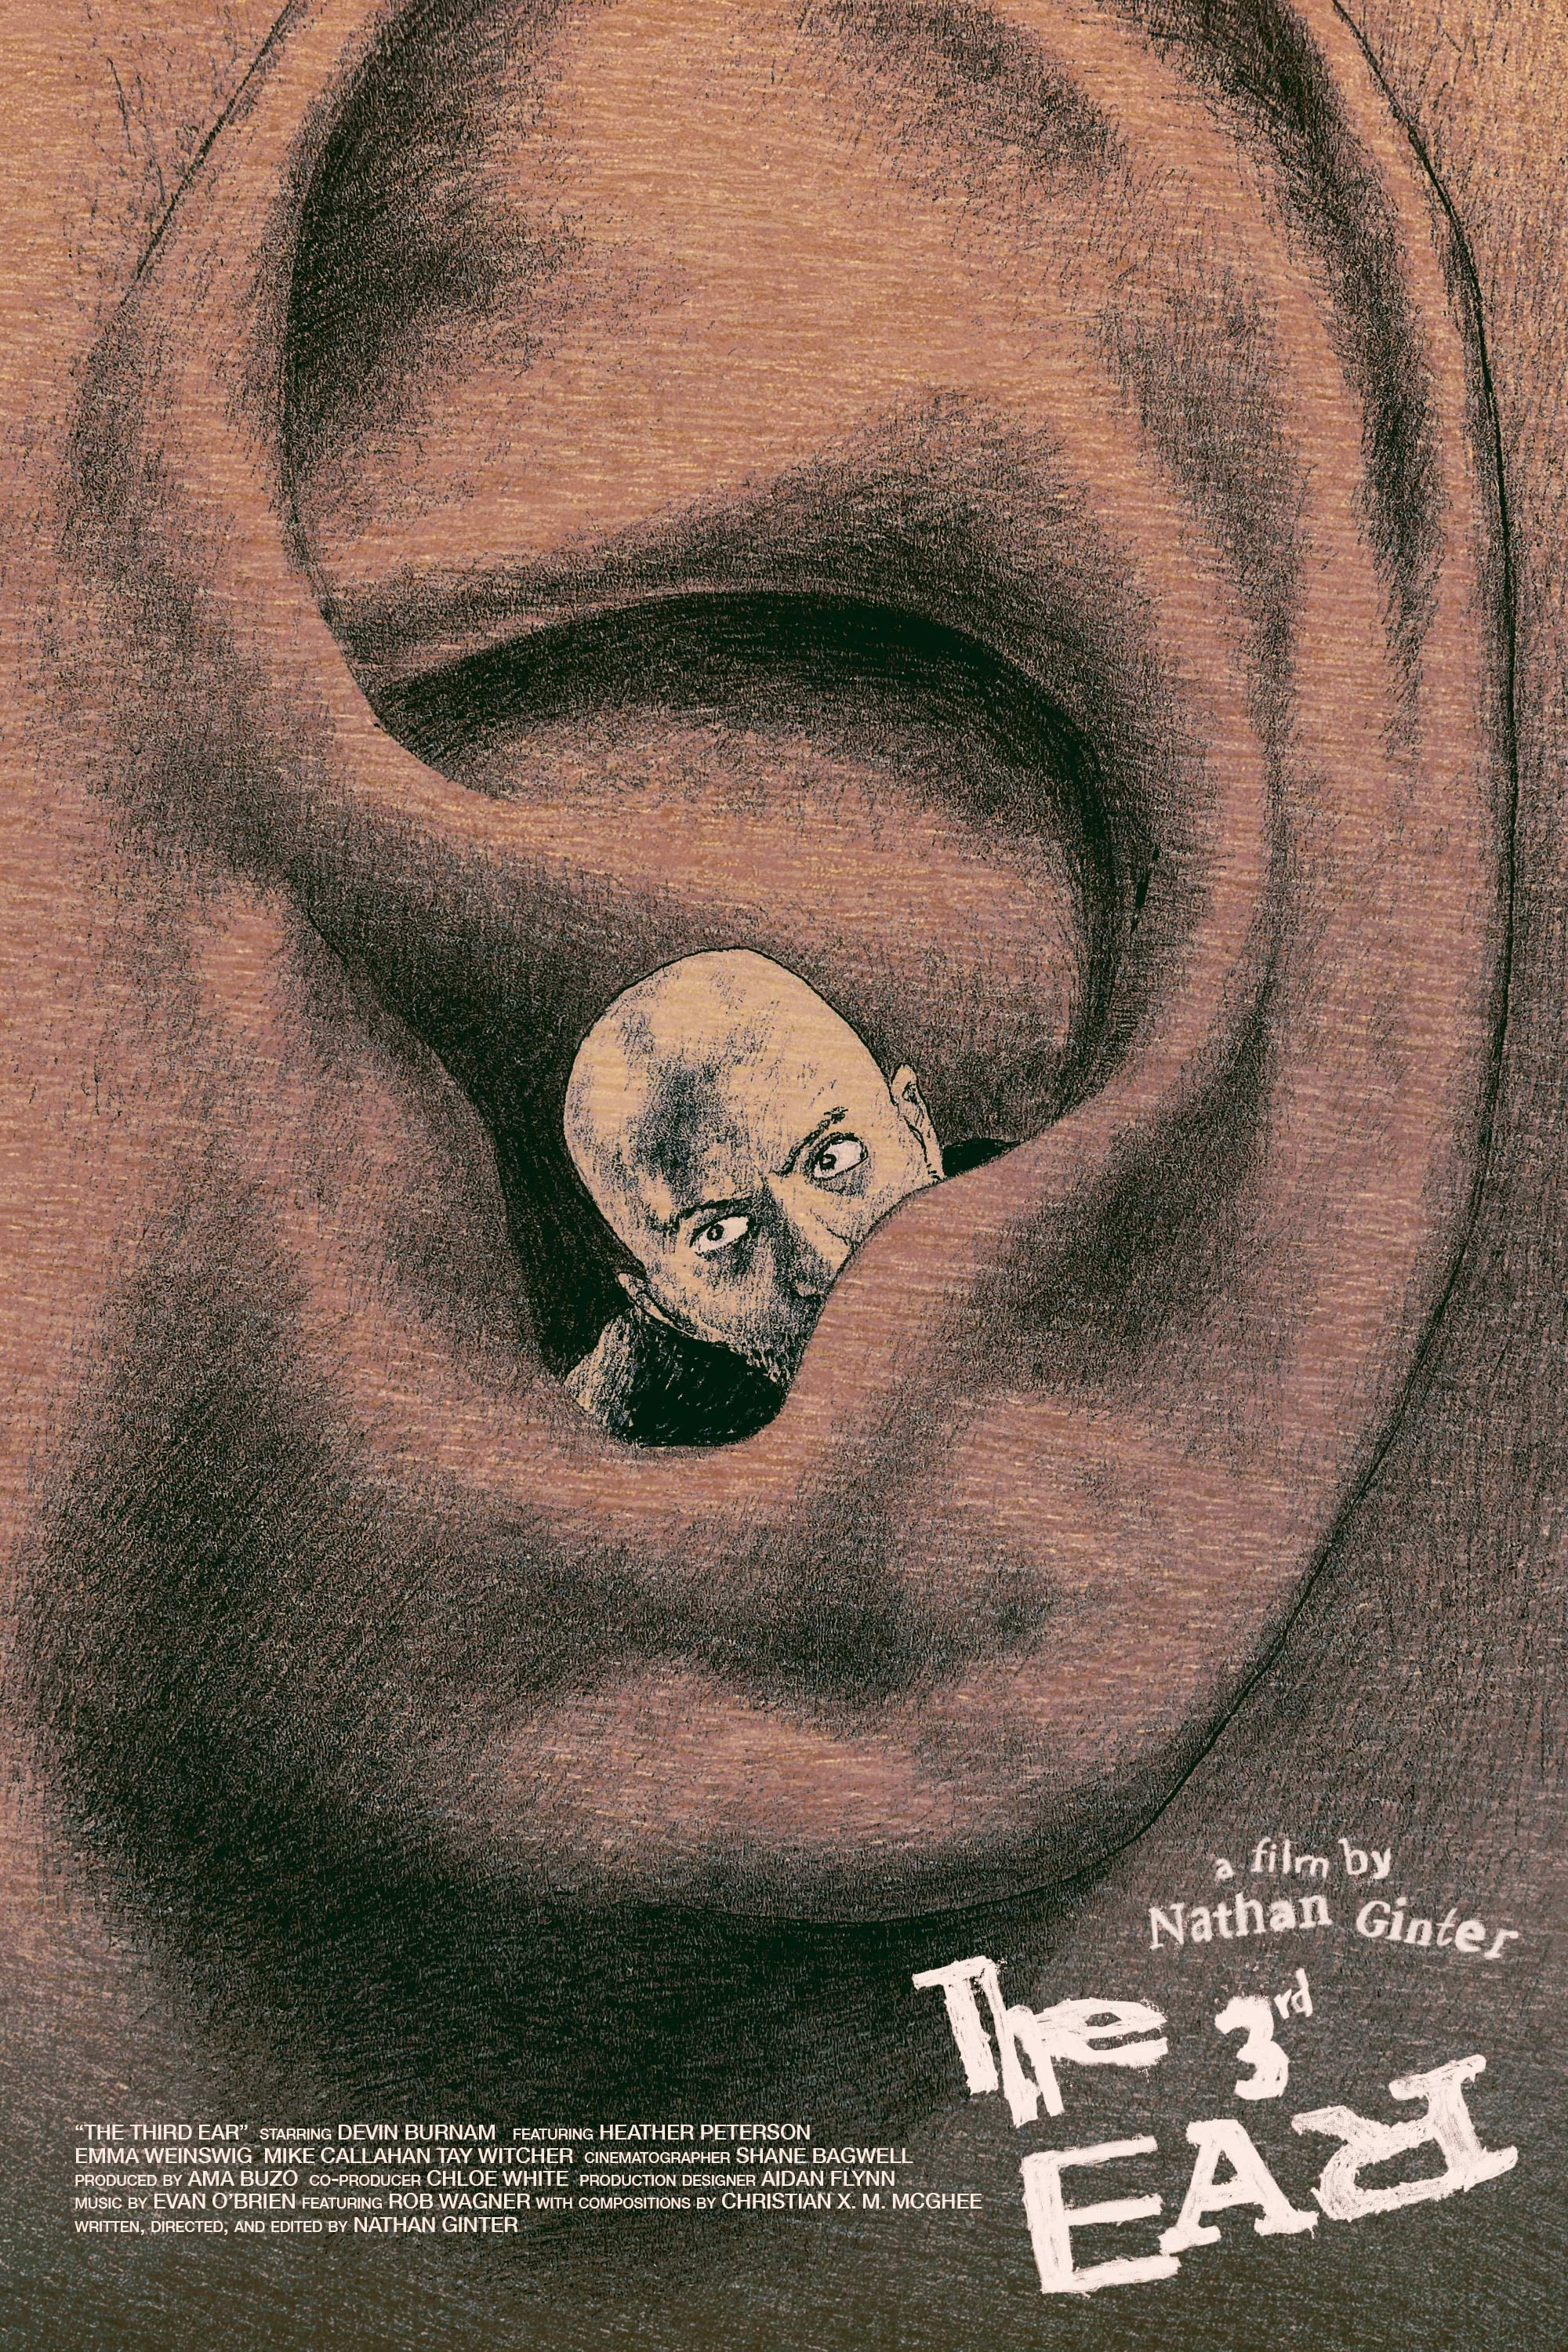 The Third Ear